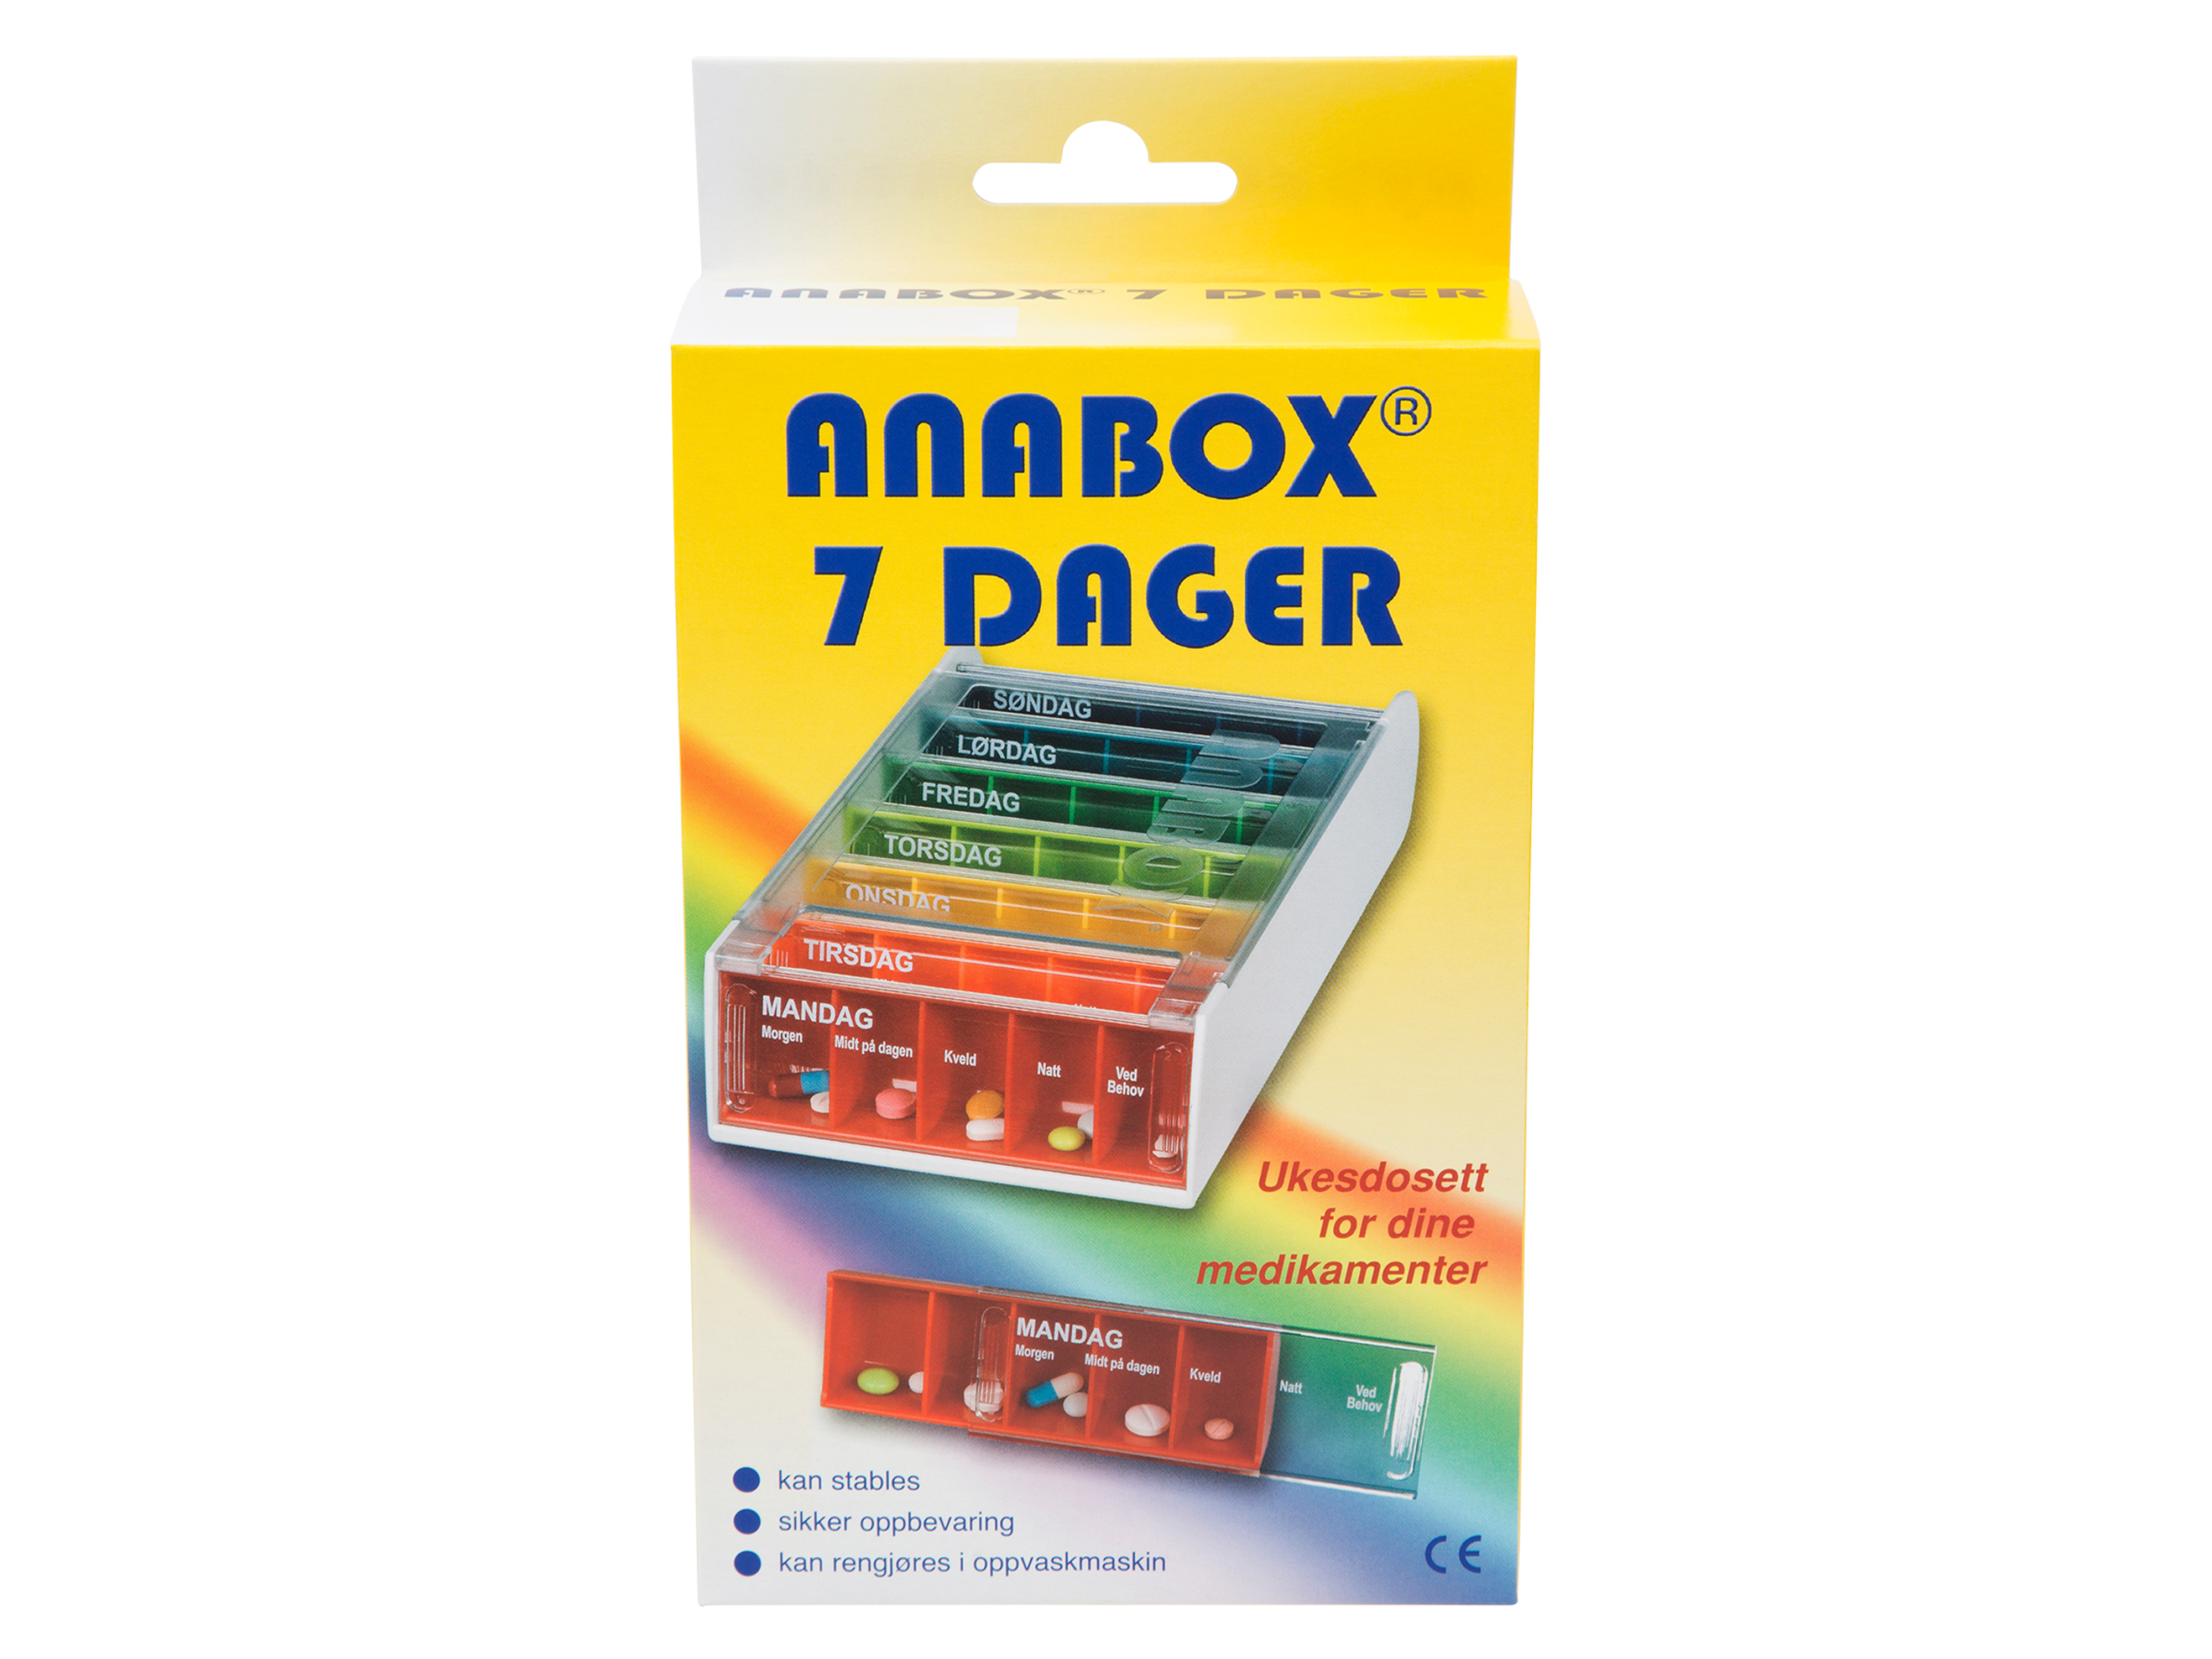 Anabox Anabox Dosett ukesdosering, 1 stk